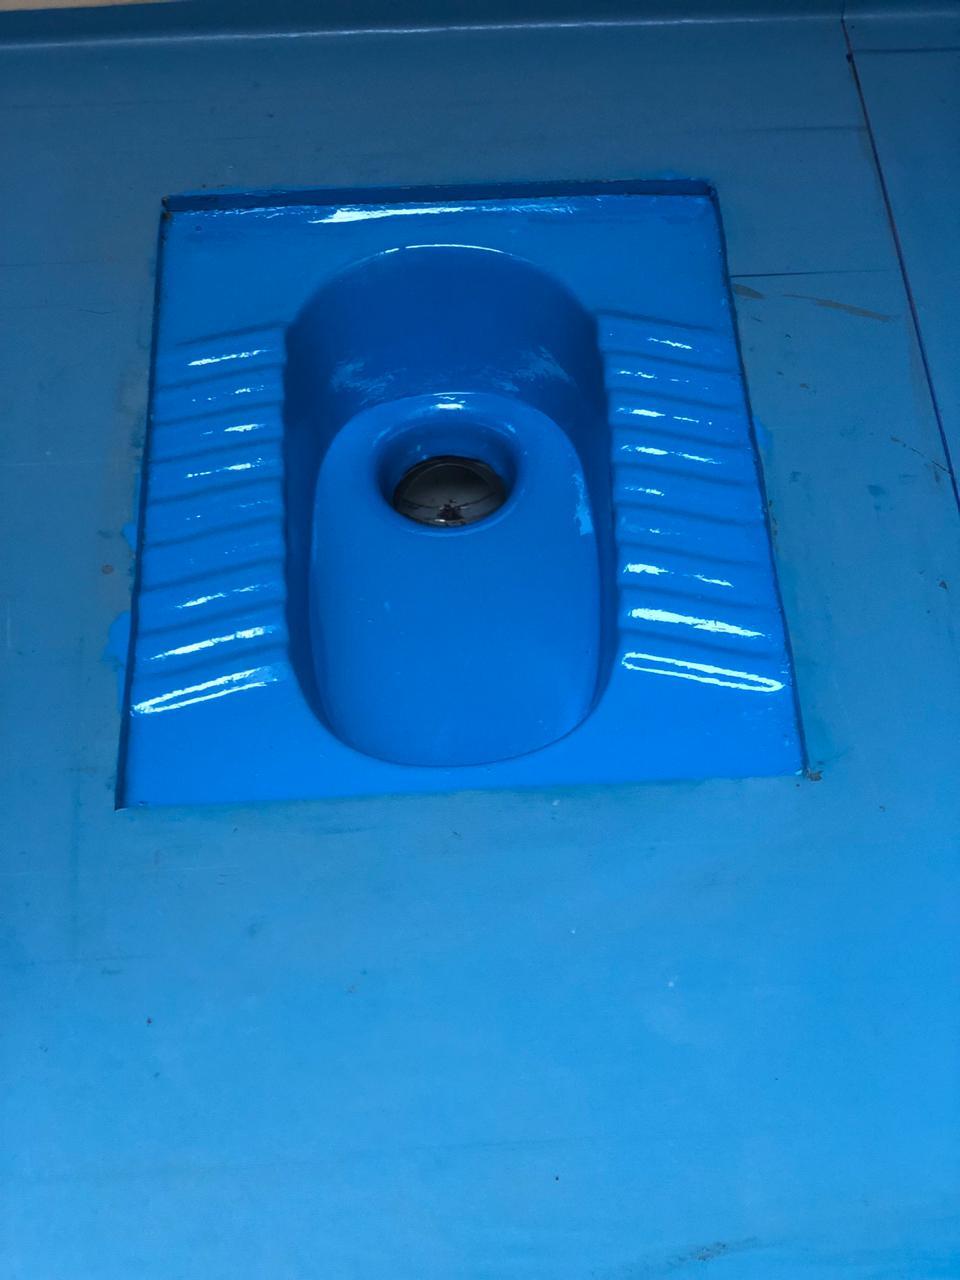 PVC Portable Toilet